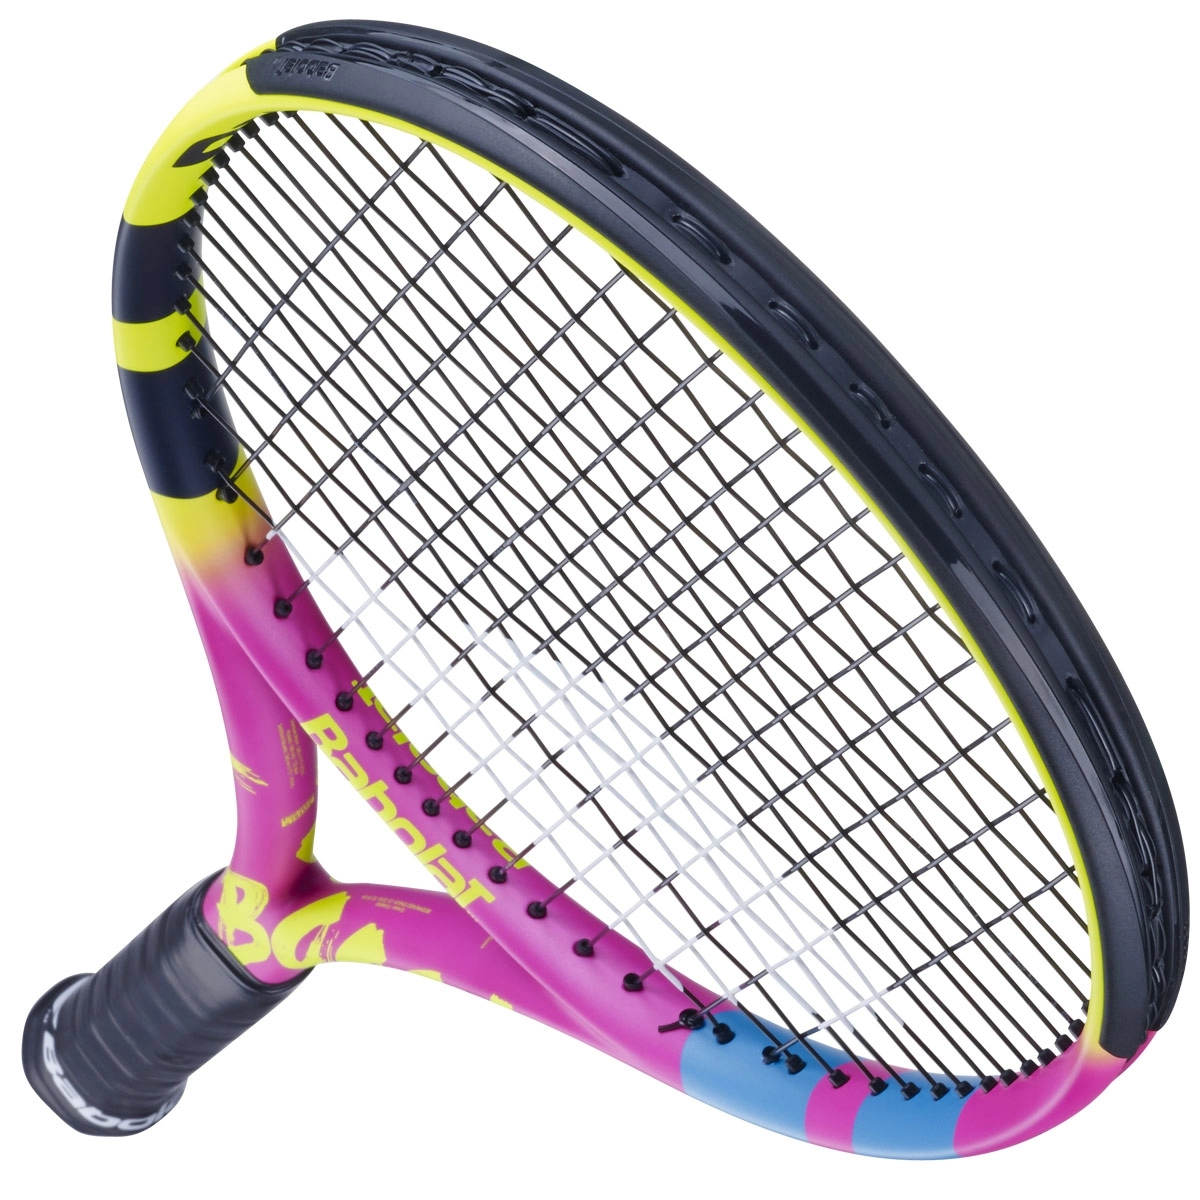 Thông số của vợt tennis Babolat Boost Aero Rafa 260gr chính hãng (121246)